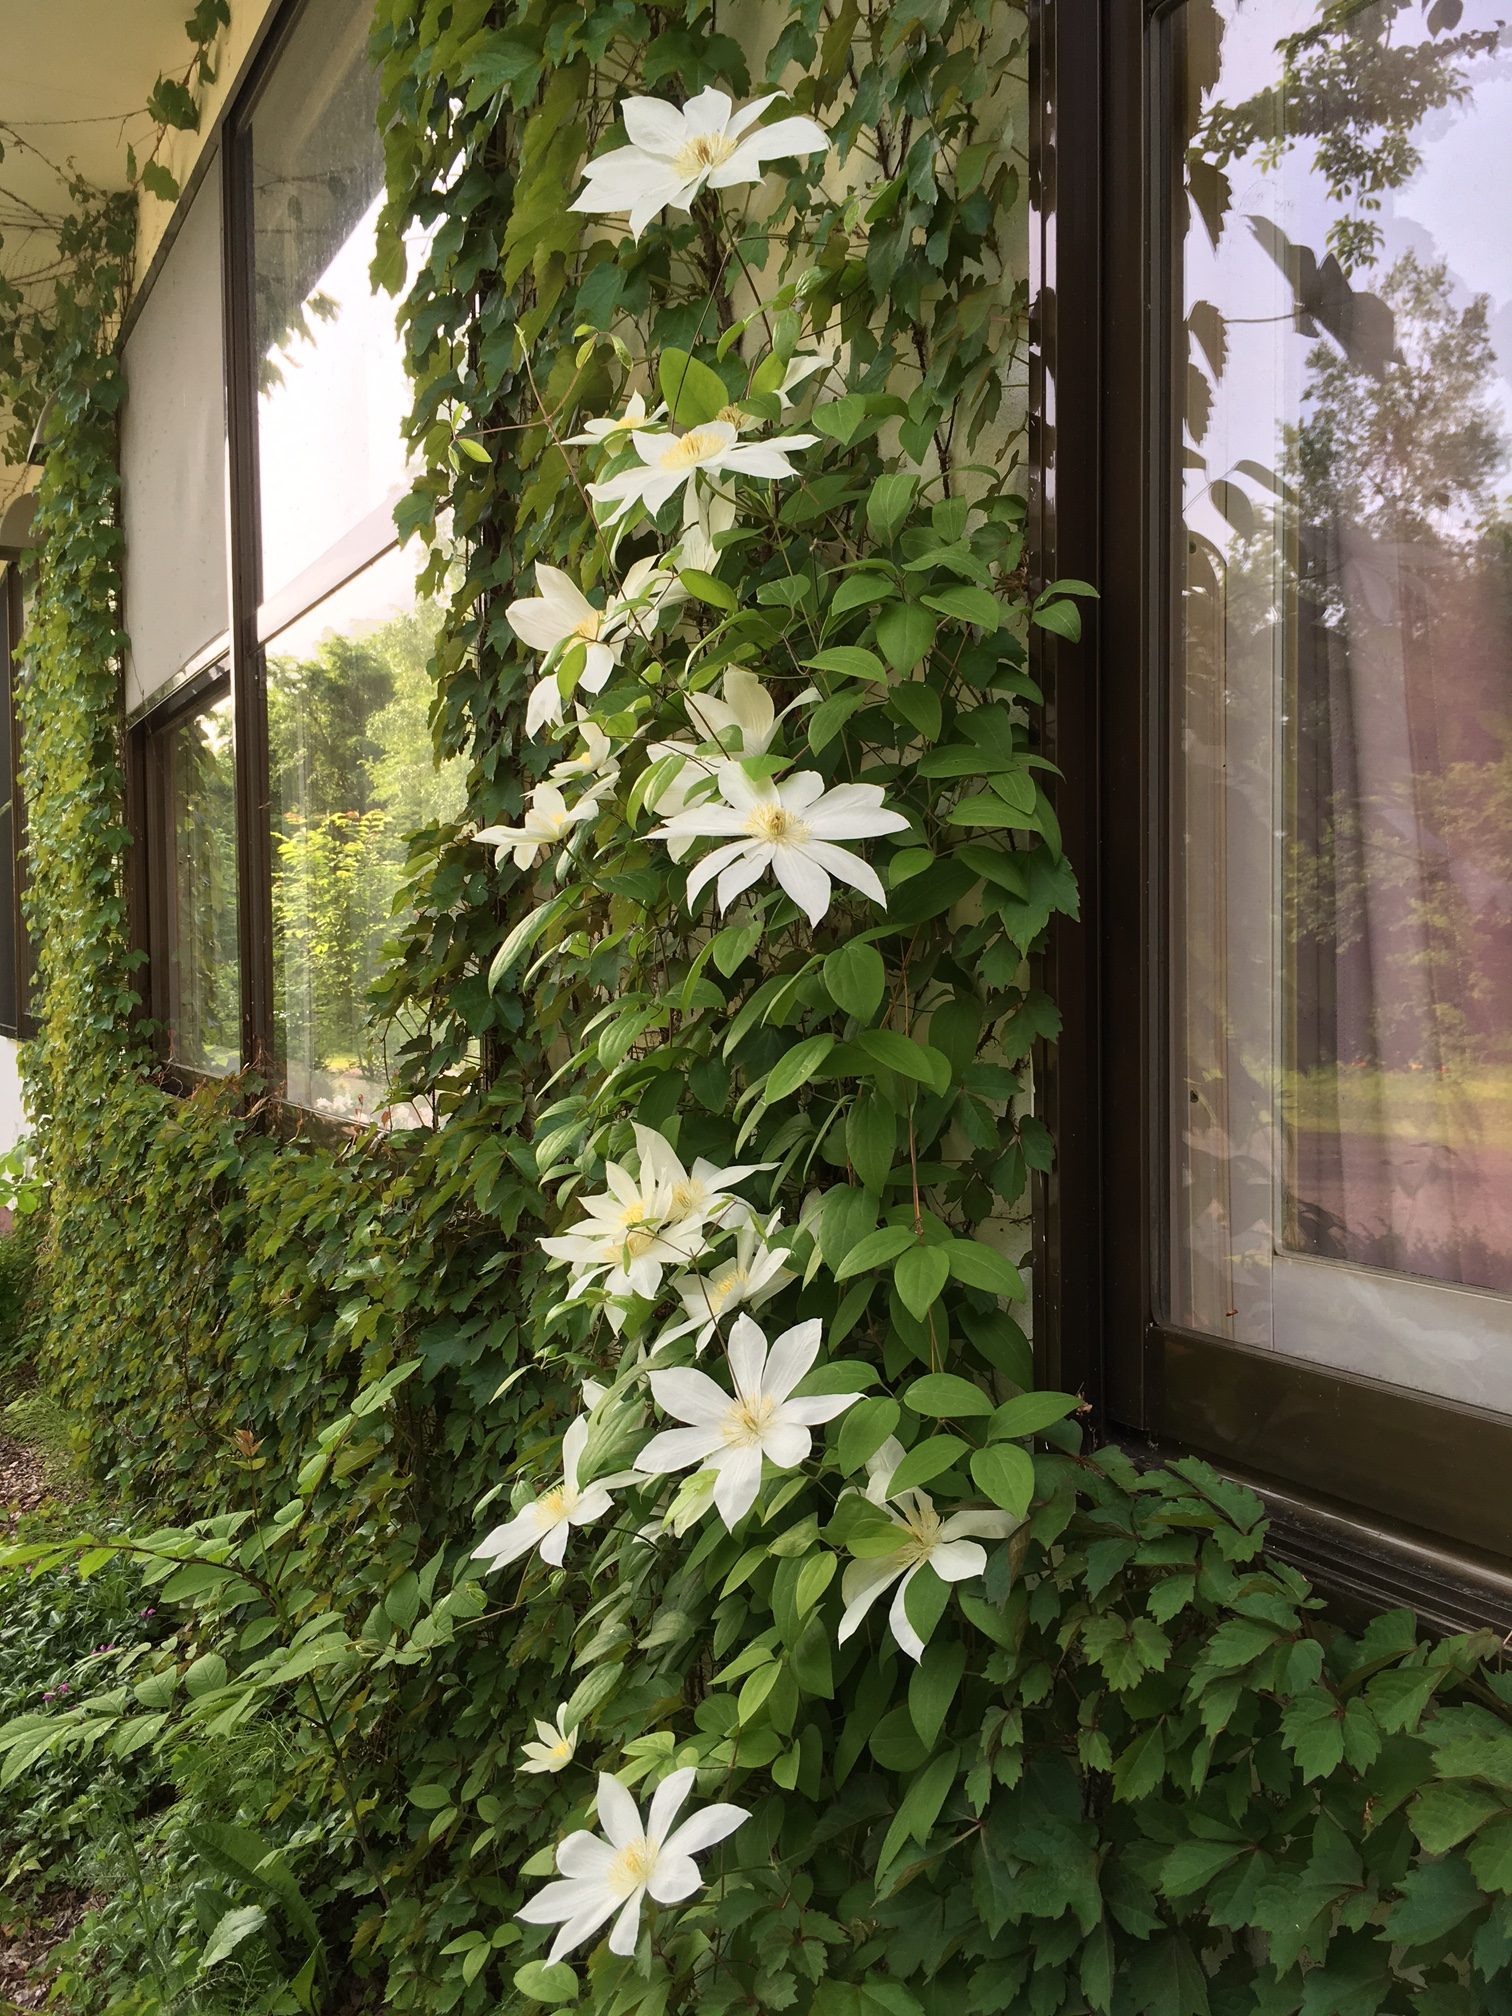 ツタに咲く白い花 摩周ガーデン